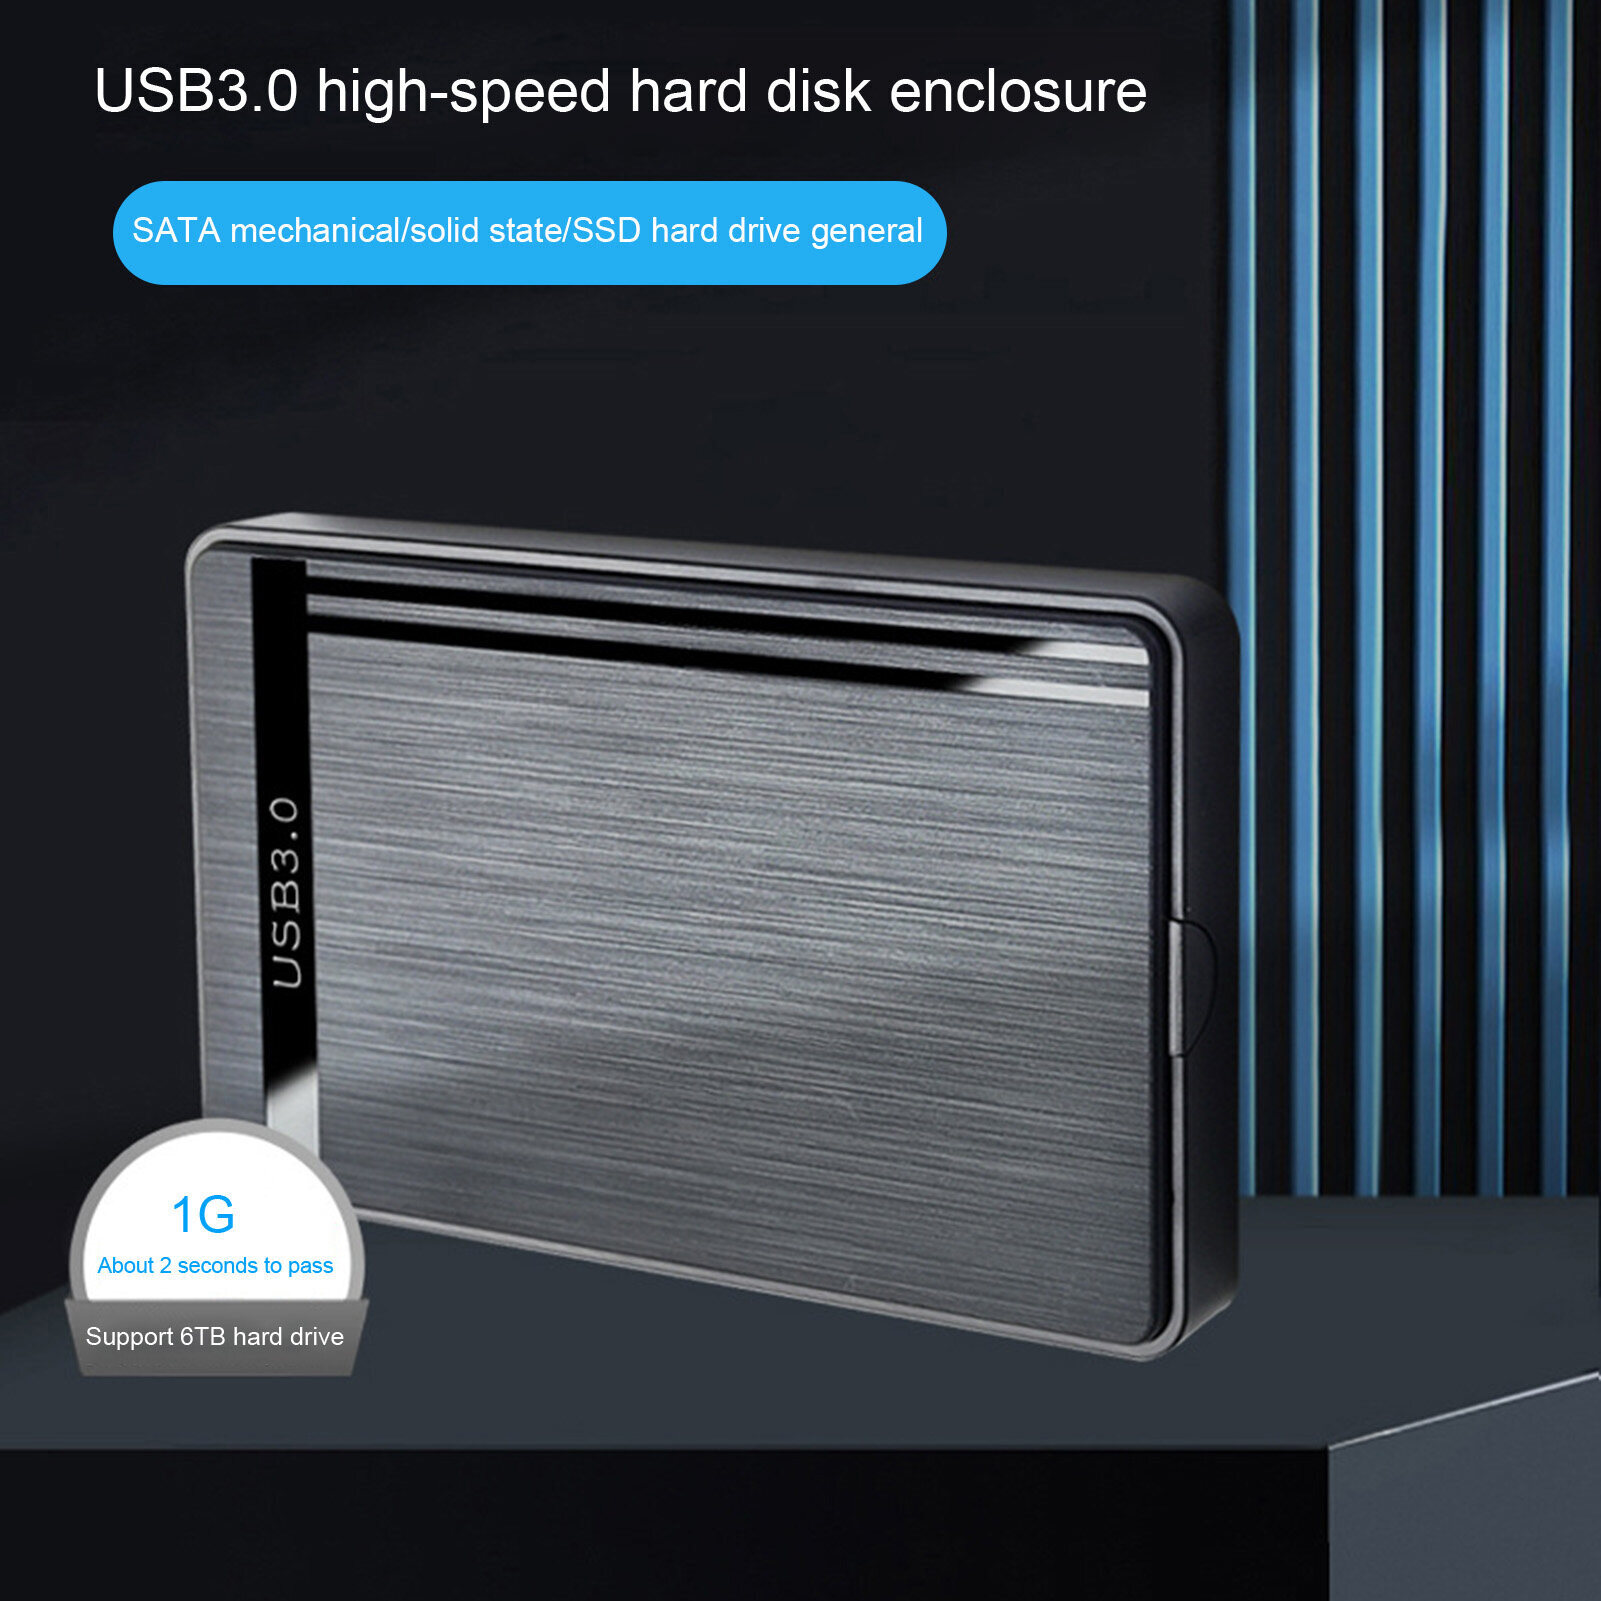 รายละเอียดเพิ่มเติมเกี่ยวกับ USB 3.0 External Box Hard Drive 2.5 กล่องใส่ฮาร์ดดิส External Hard Drive Enclosure USB 3.0 External Box Hard Drive 2.5